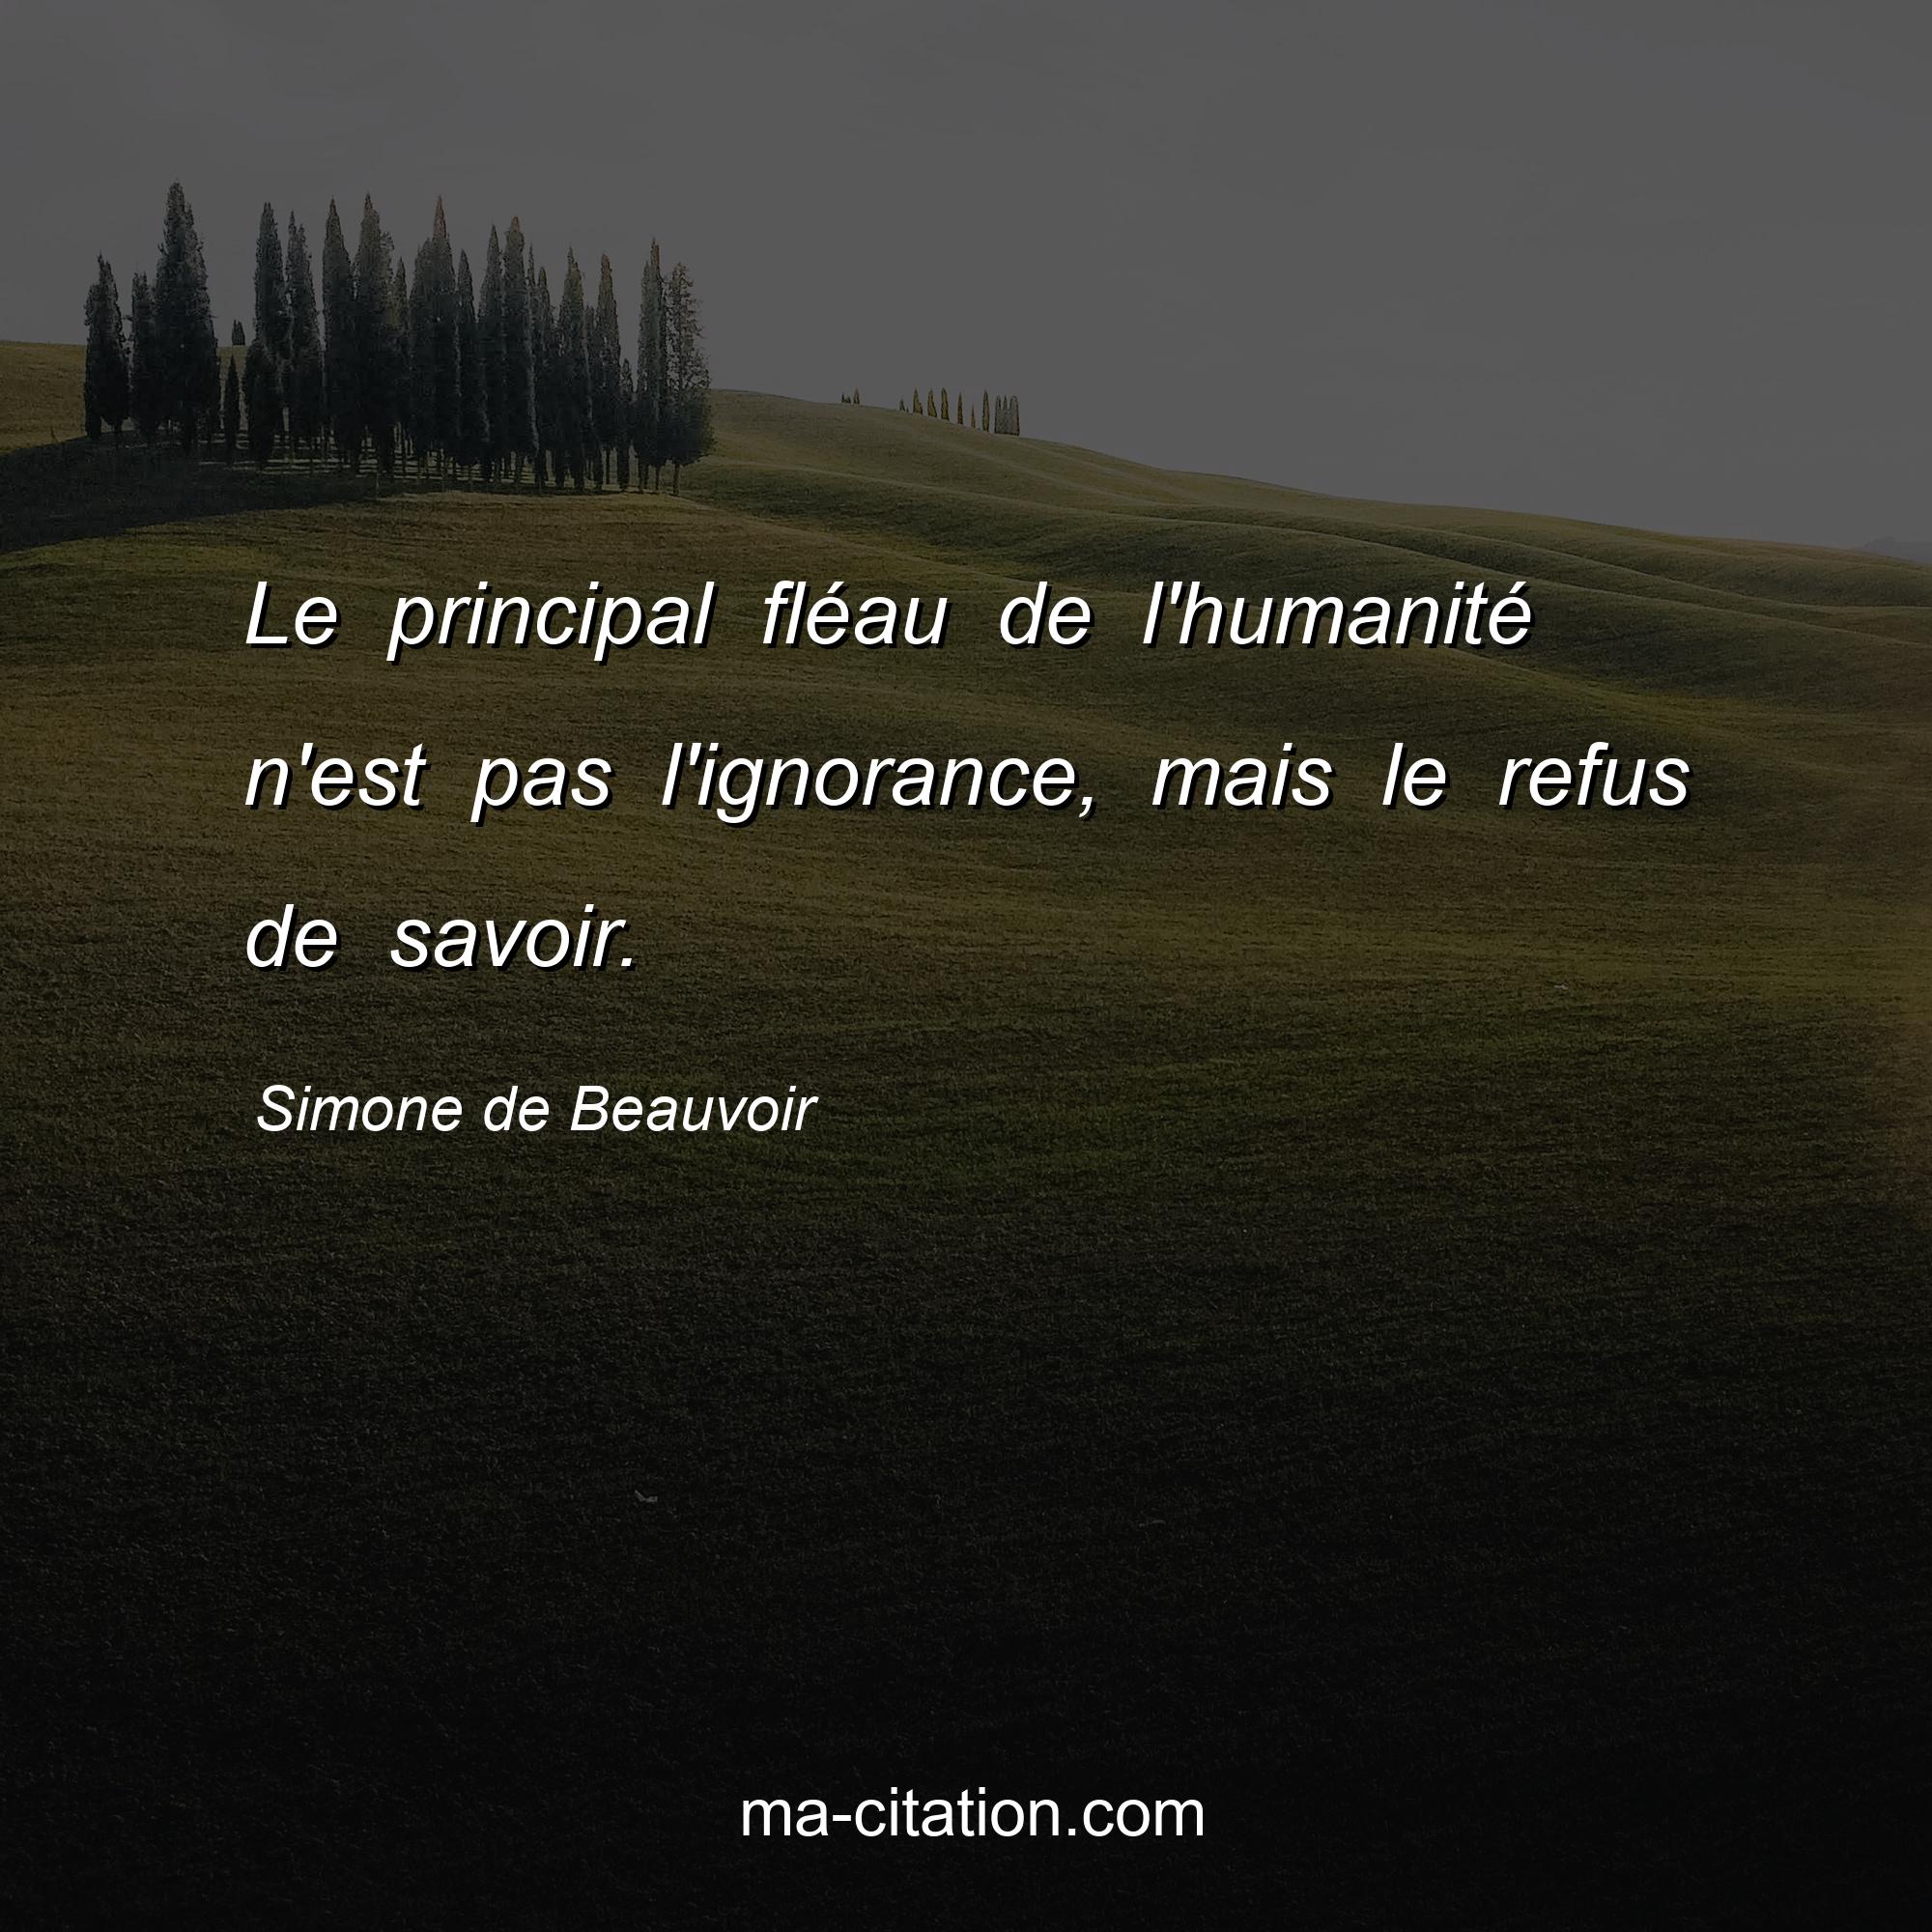 Simone de Beauvoir : Le principal fléau de l'humanité n'est pas l'ignorance, mais le refus de savoir.